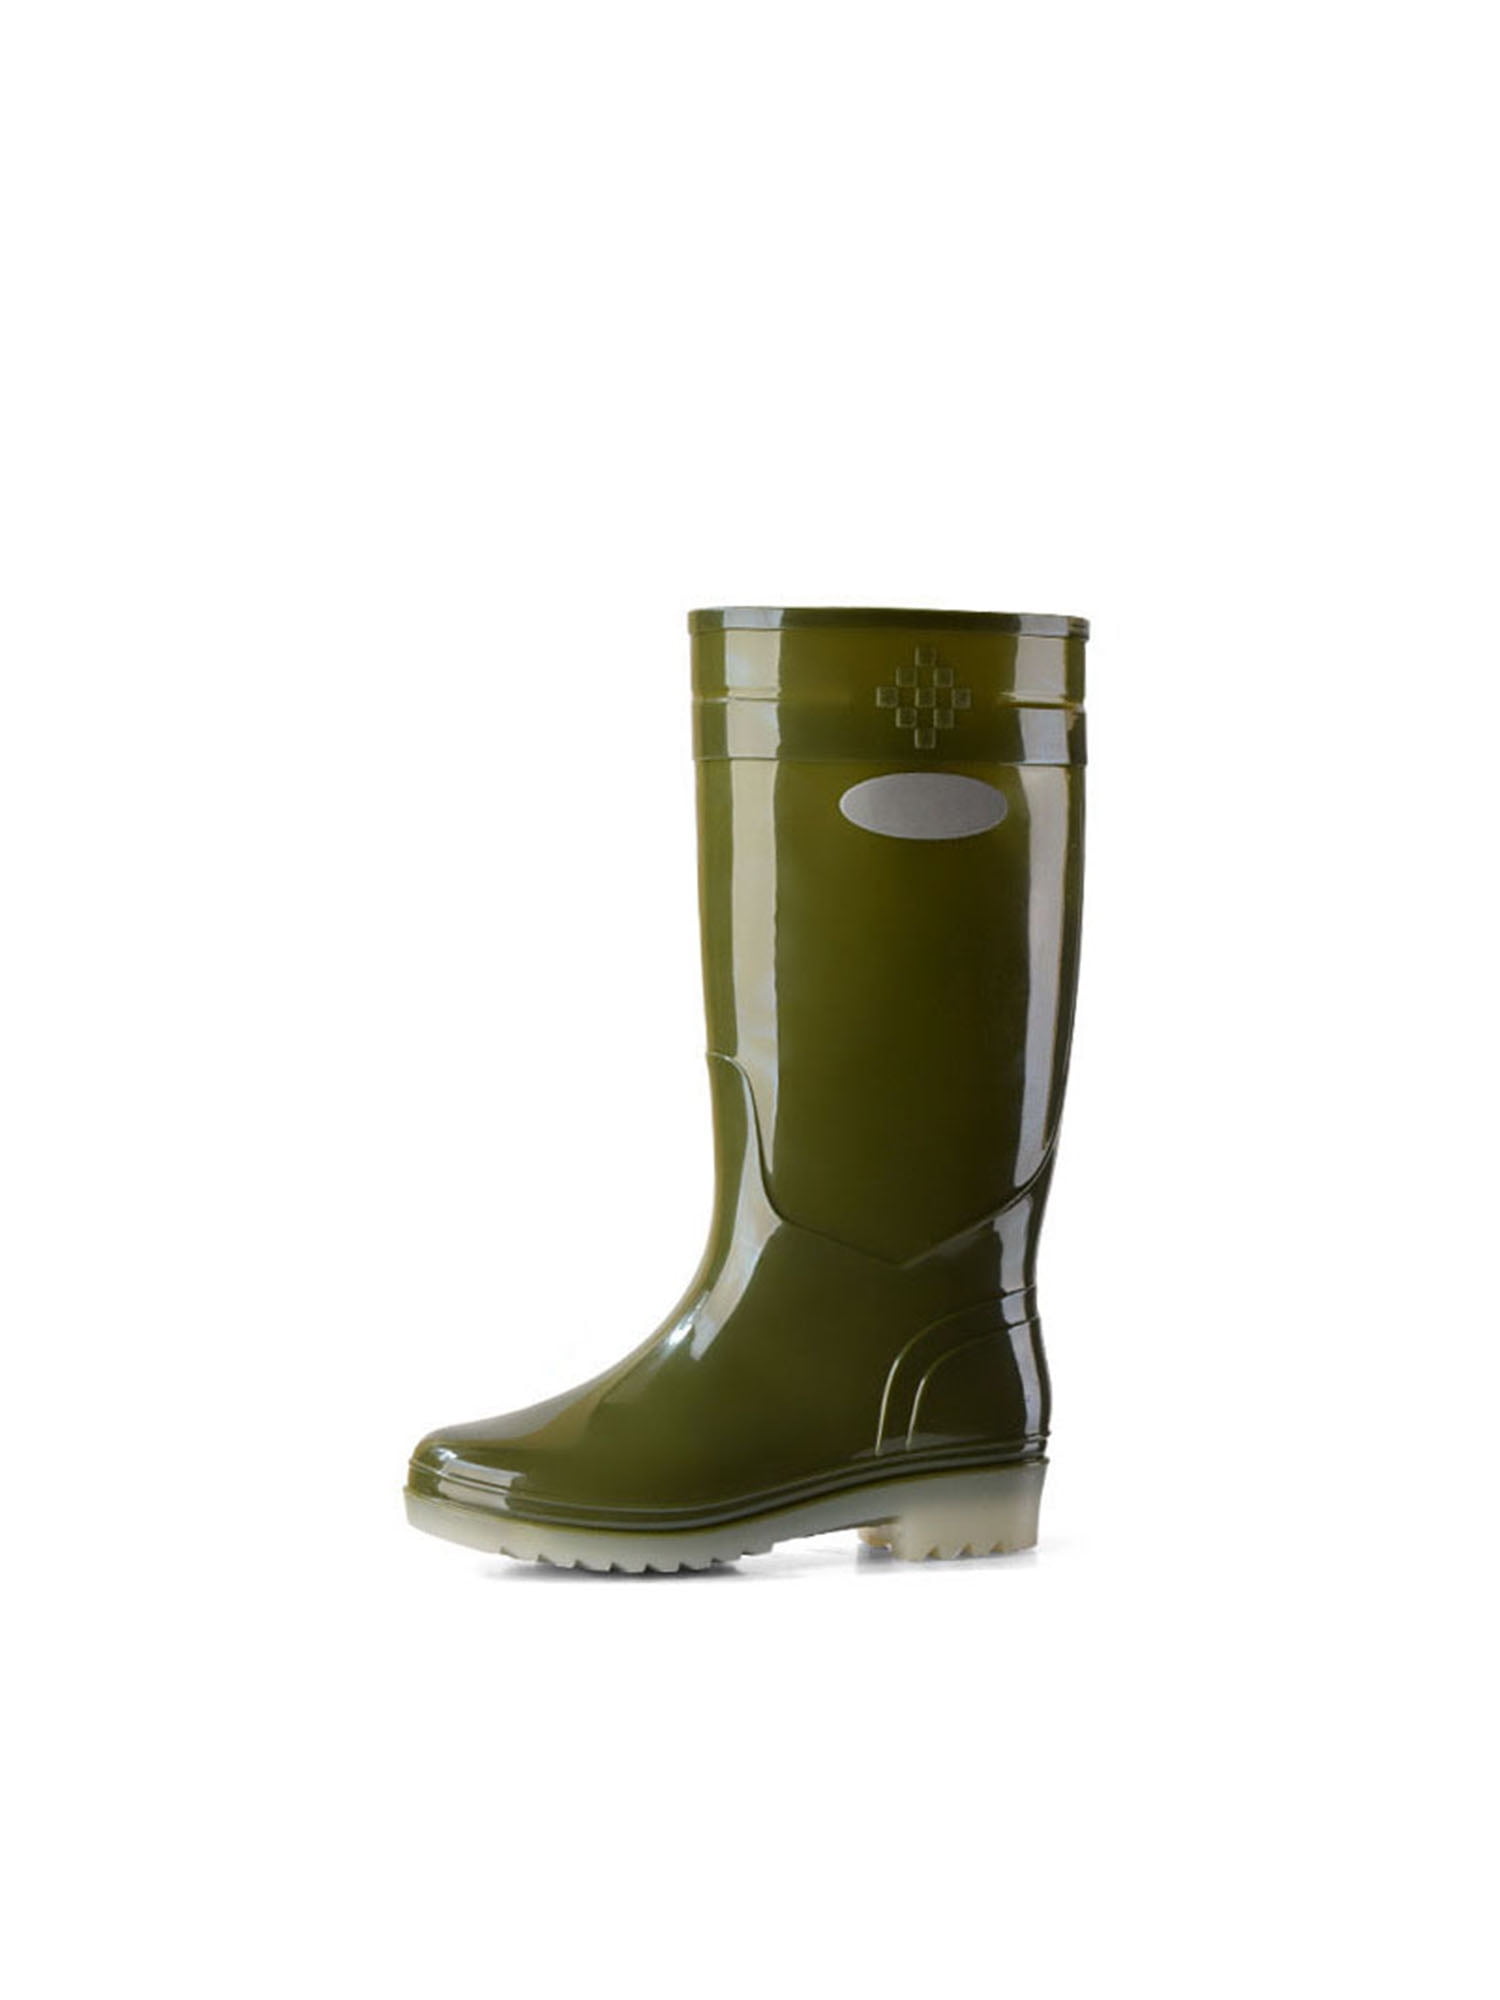 UKAP Womens Mid Calf Rain Boots Waterproof Garden Shoes Mens Knee High ...